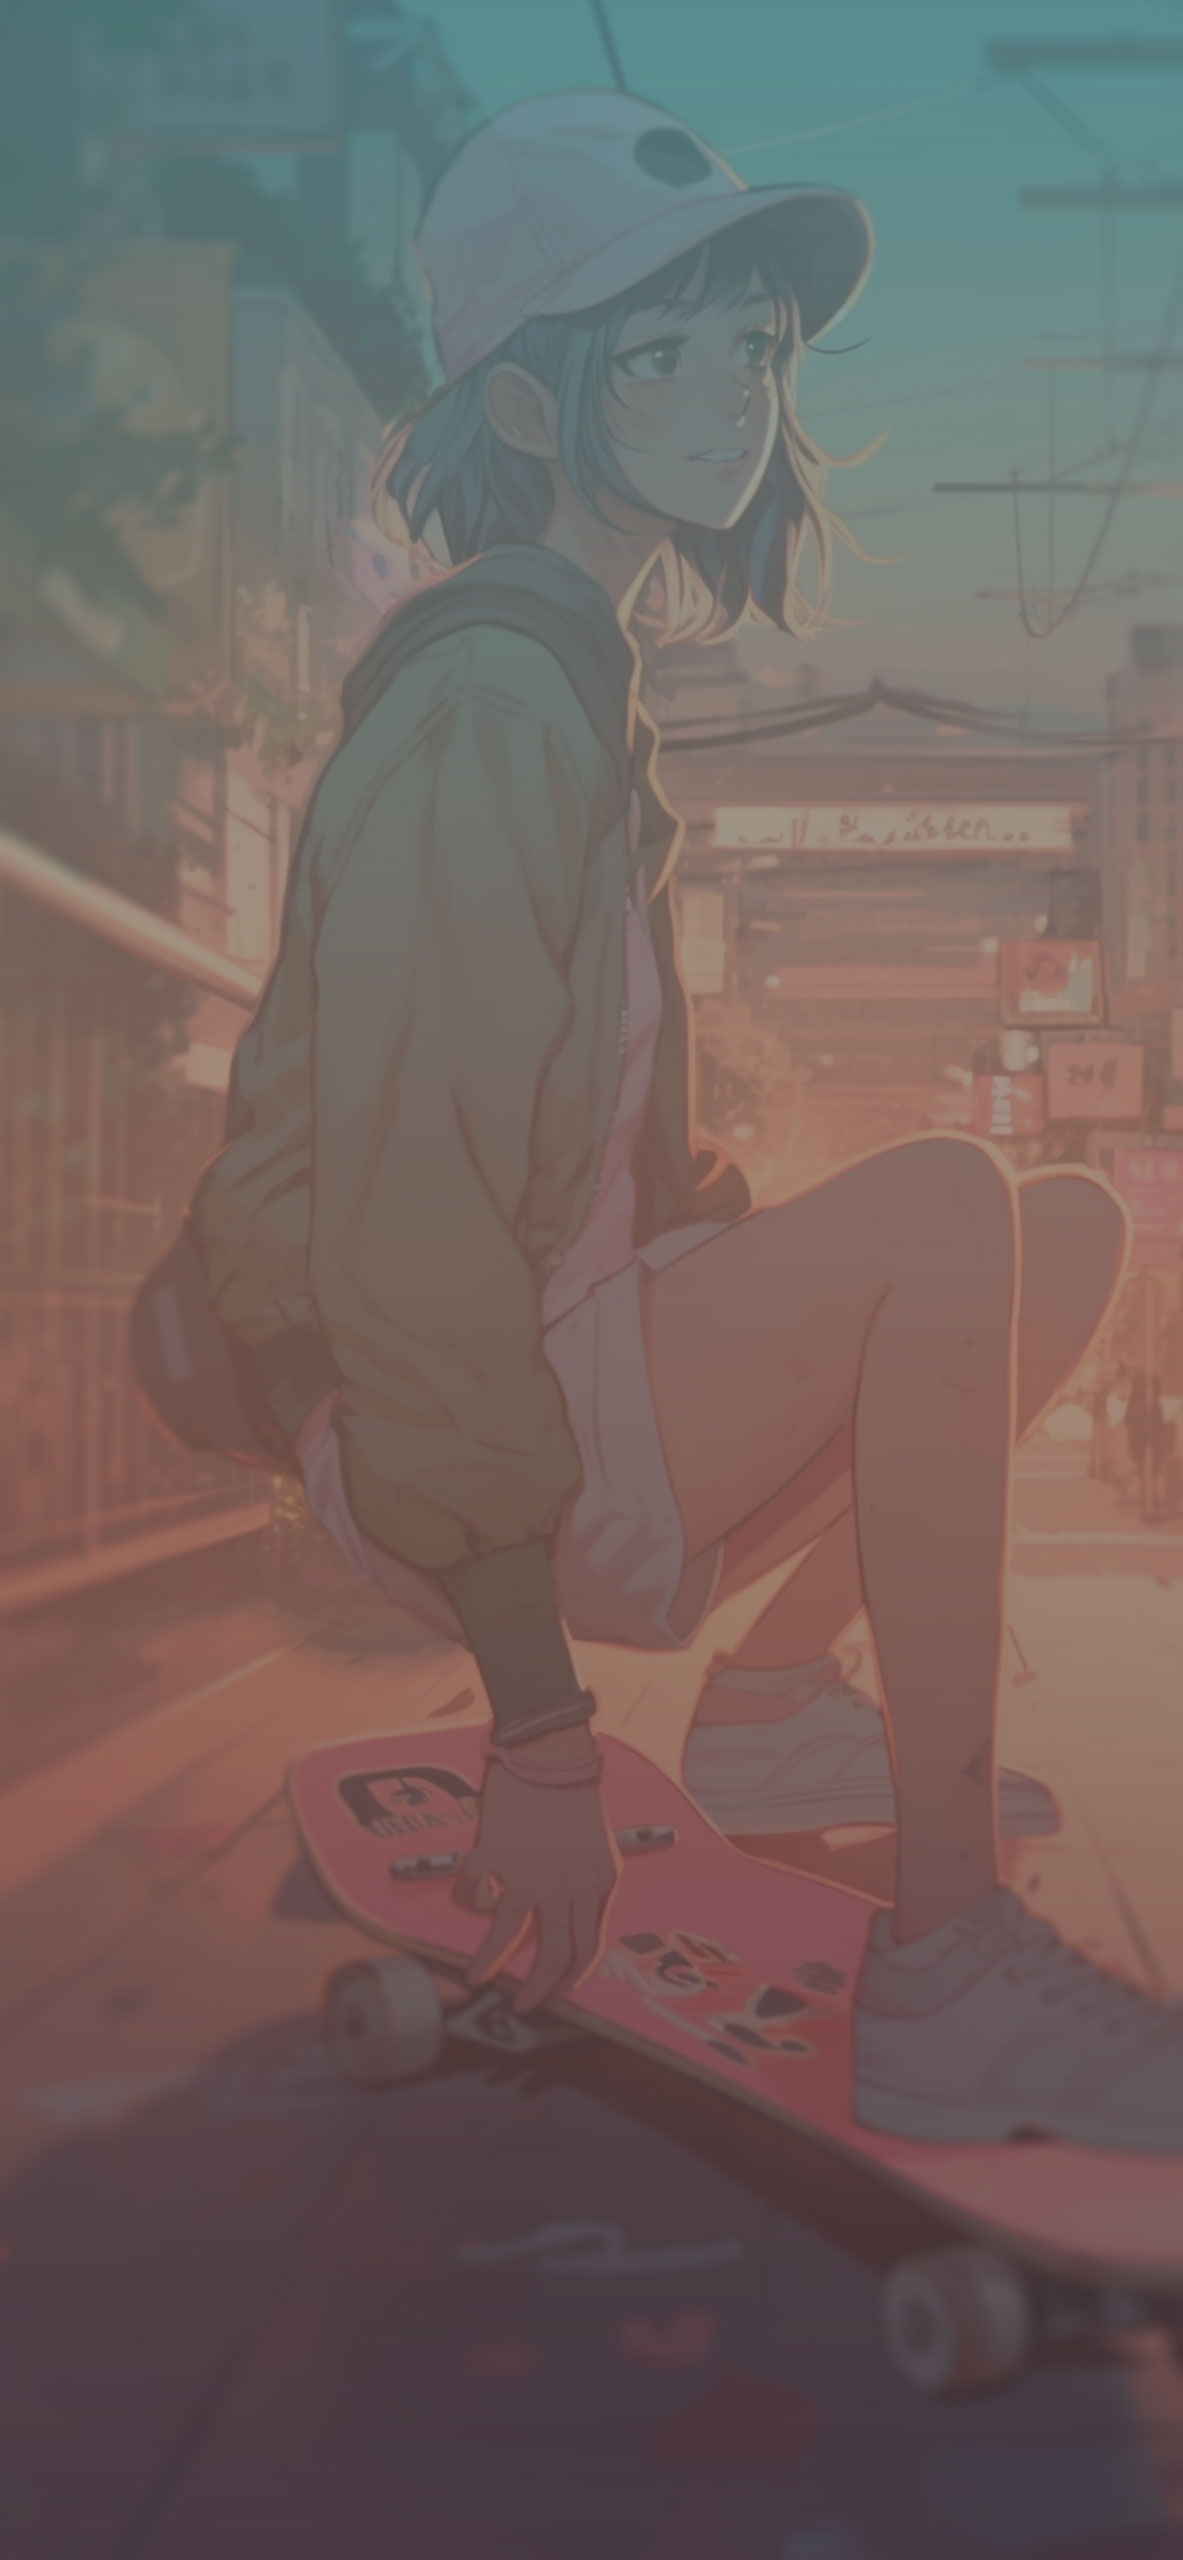 Anime Girl with Skateboard Wallpaper Anime Girl Wallpaper for